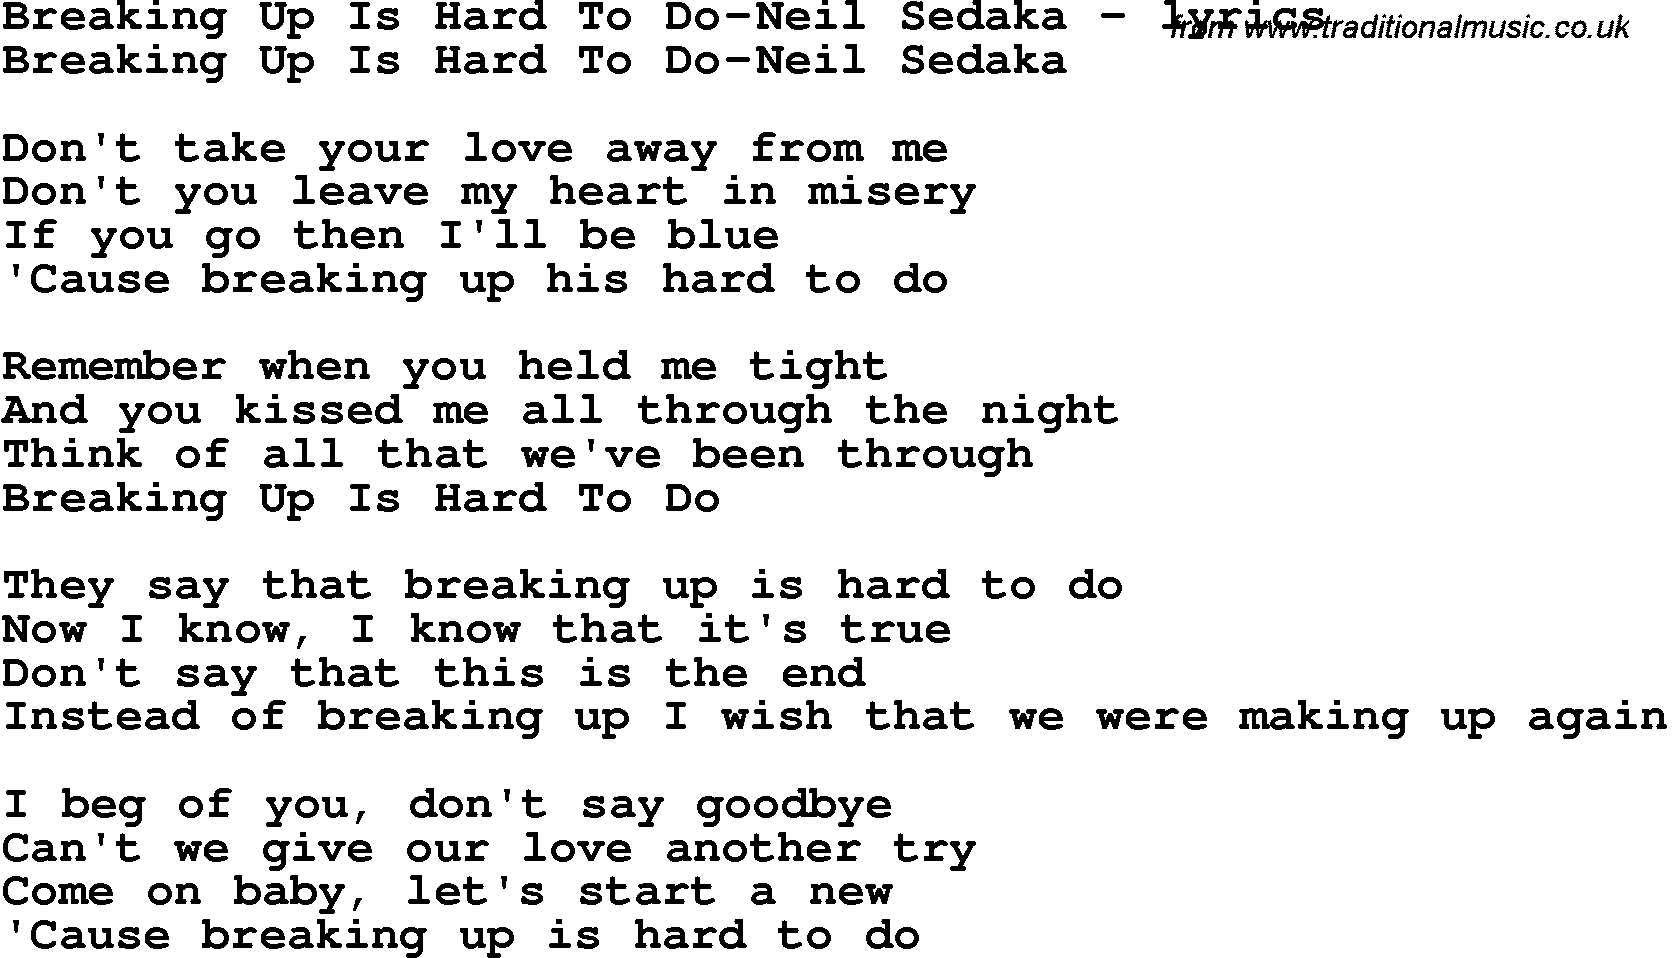 Love Song Lyrics for: Breaking Up Is Hard To Do-Neil Sedaka